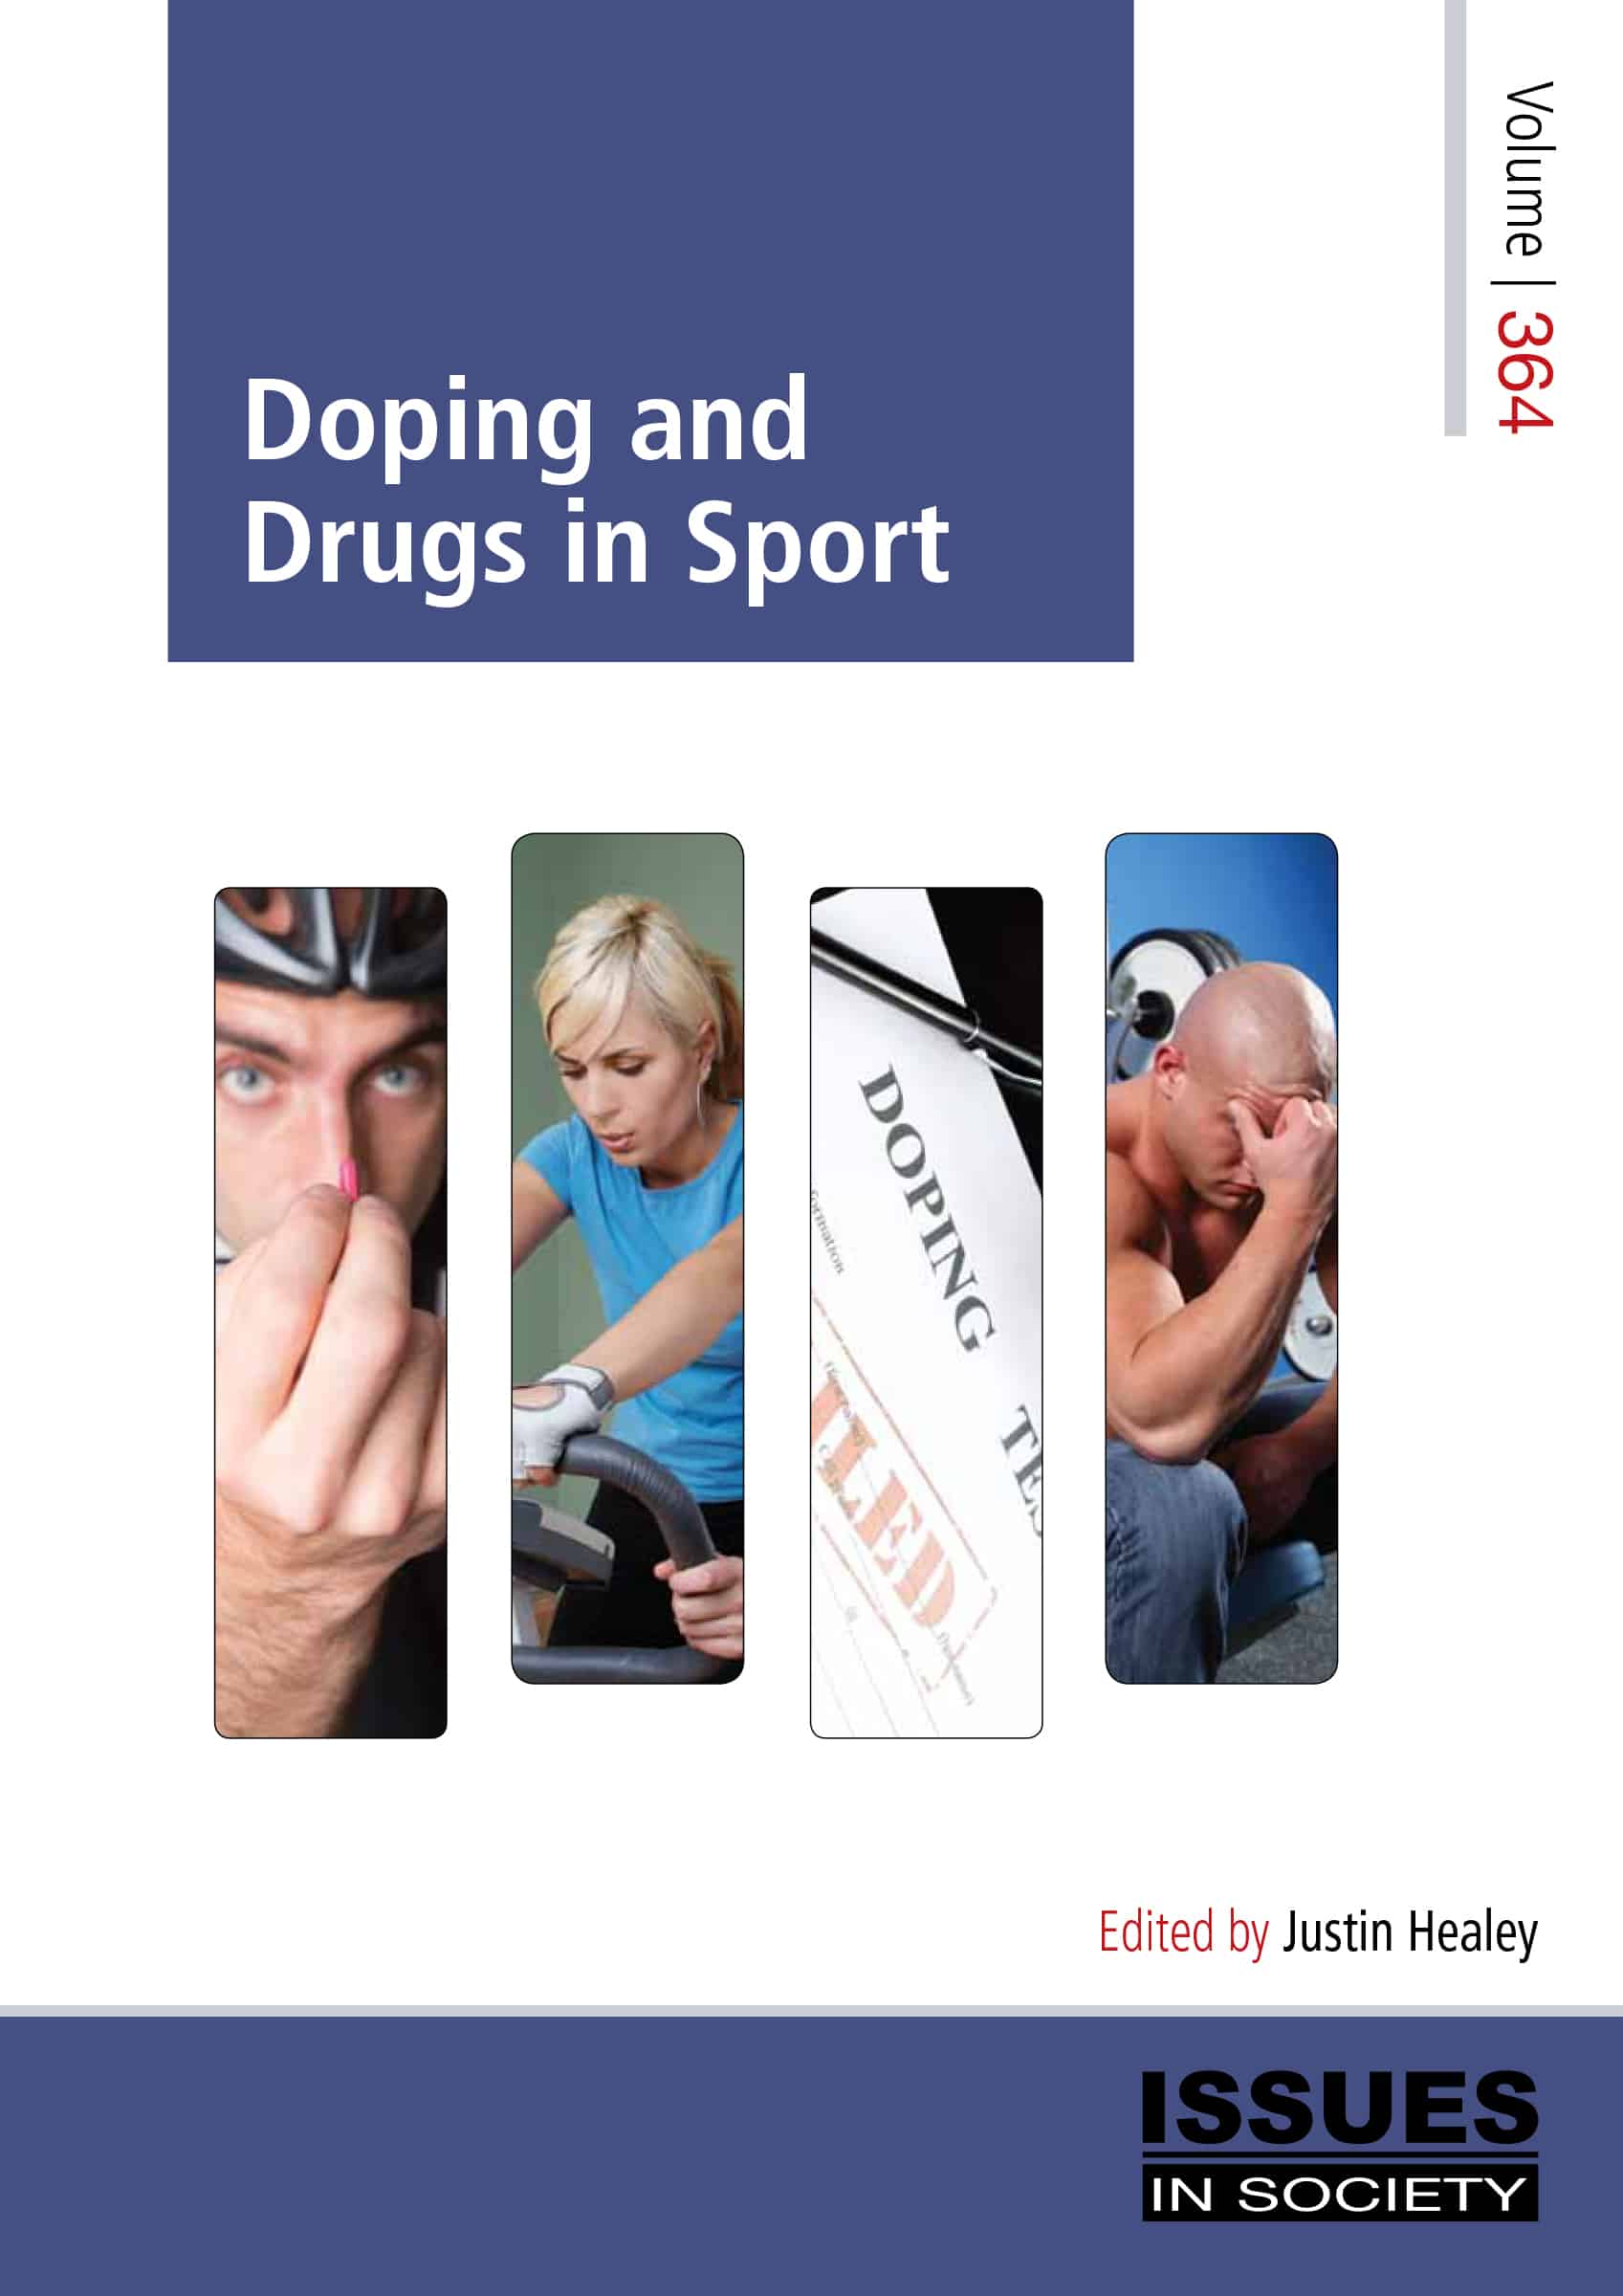 essay on drugs in sport